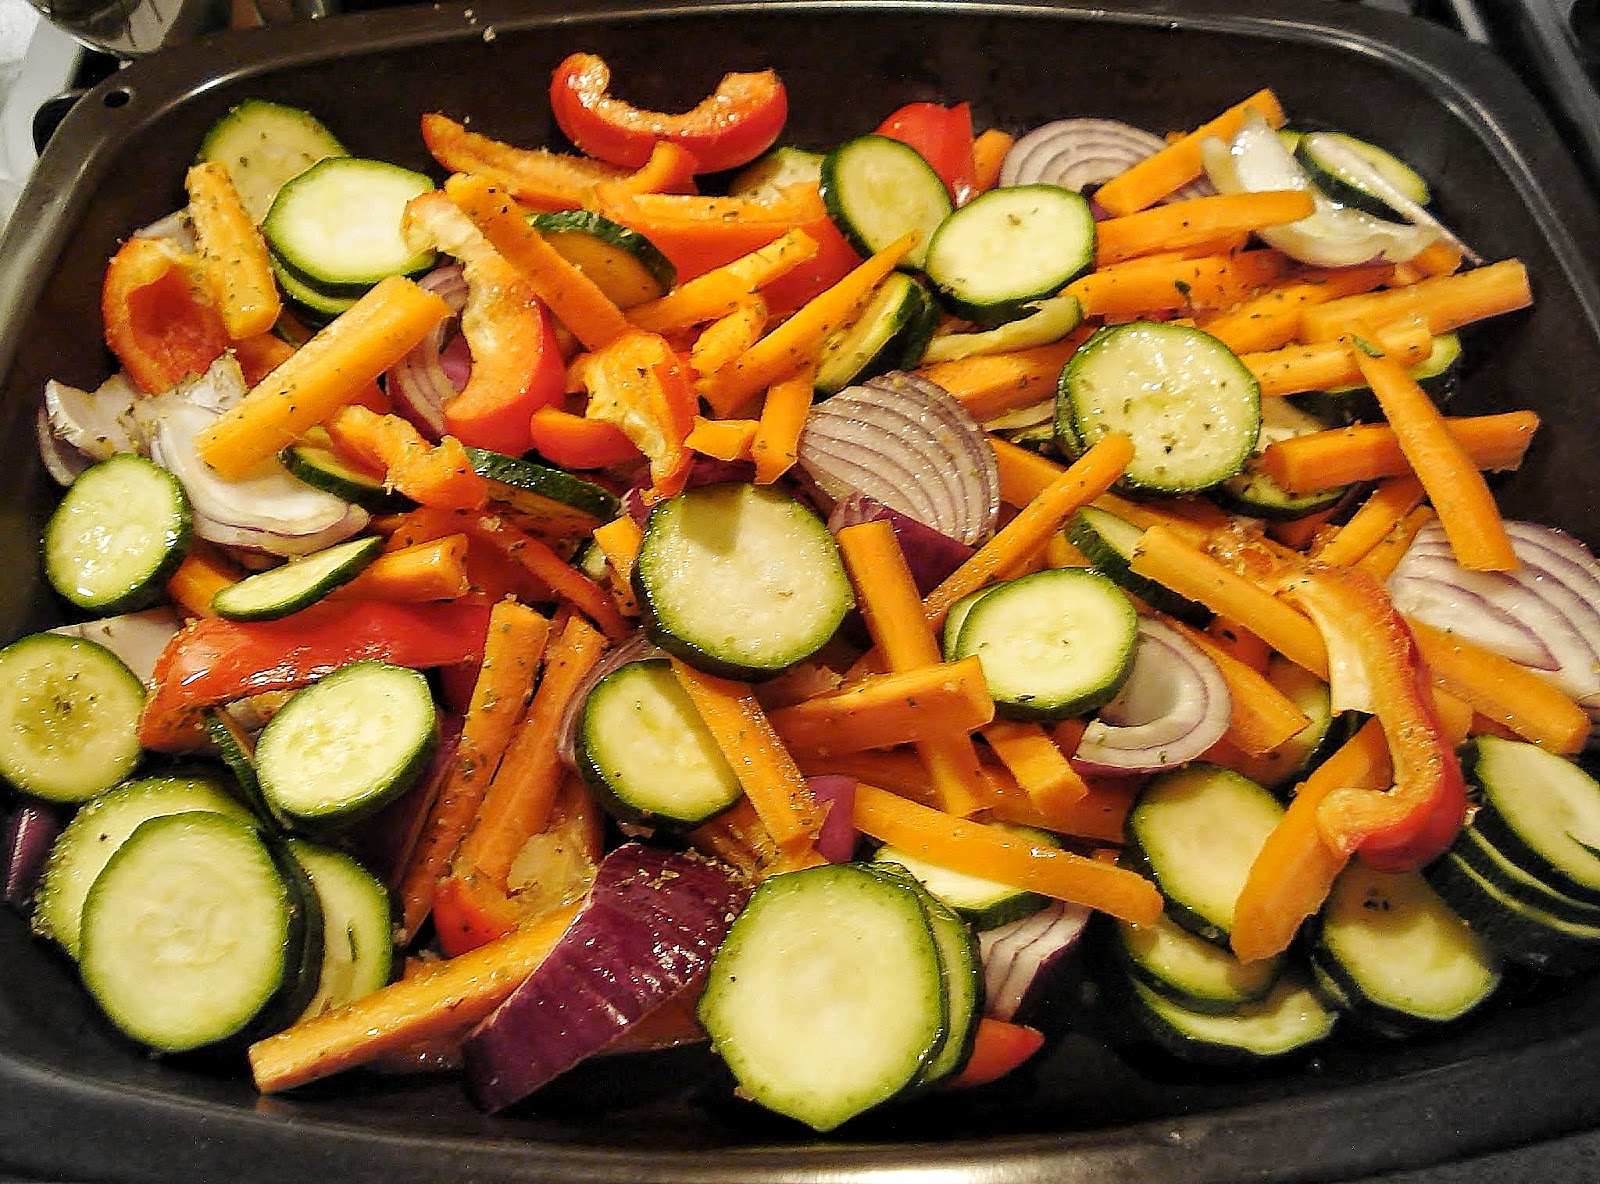 Видео как приготовить овощи. Запечённые овощи и корнеплоды. Овощной микс. Roasted Vegetables in Oven. Отварные корнеплоды.